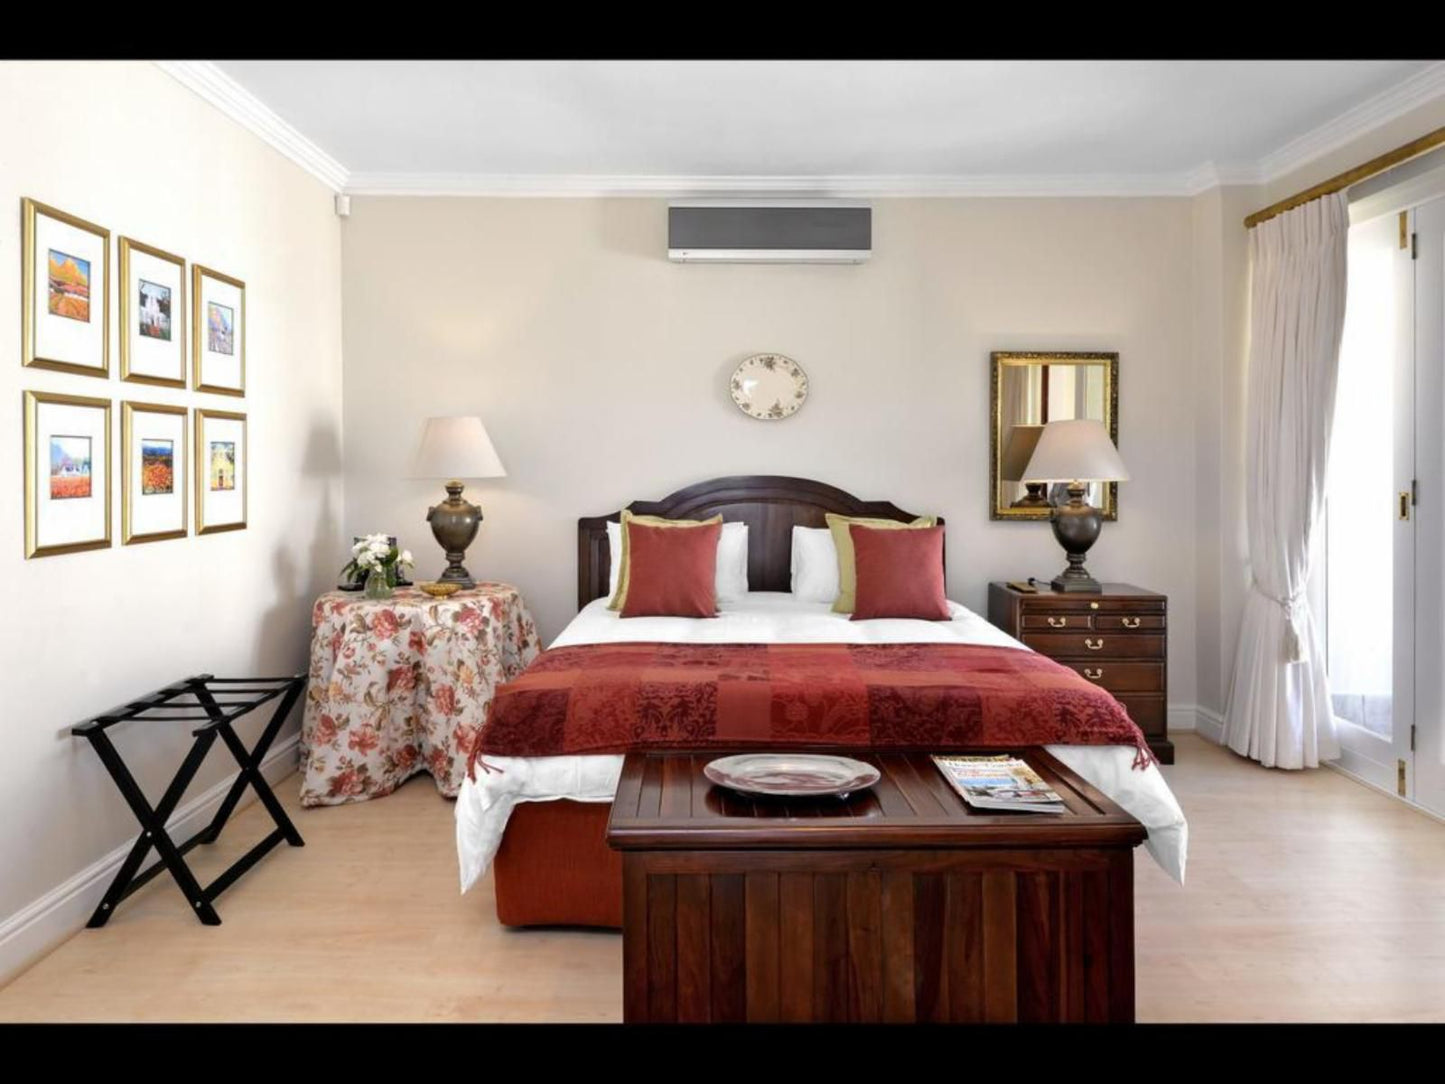 10 Villefranche Franschhoek Western Cape South Africa Bedroom